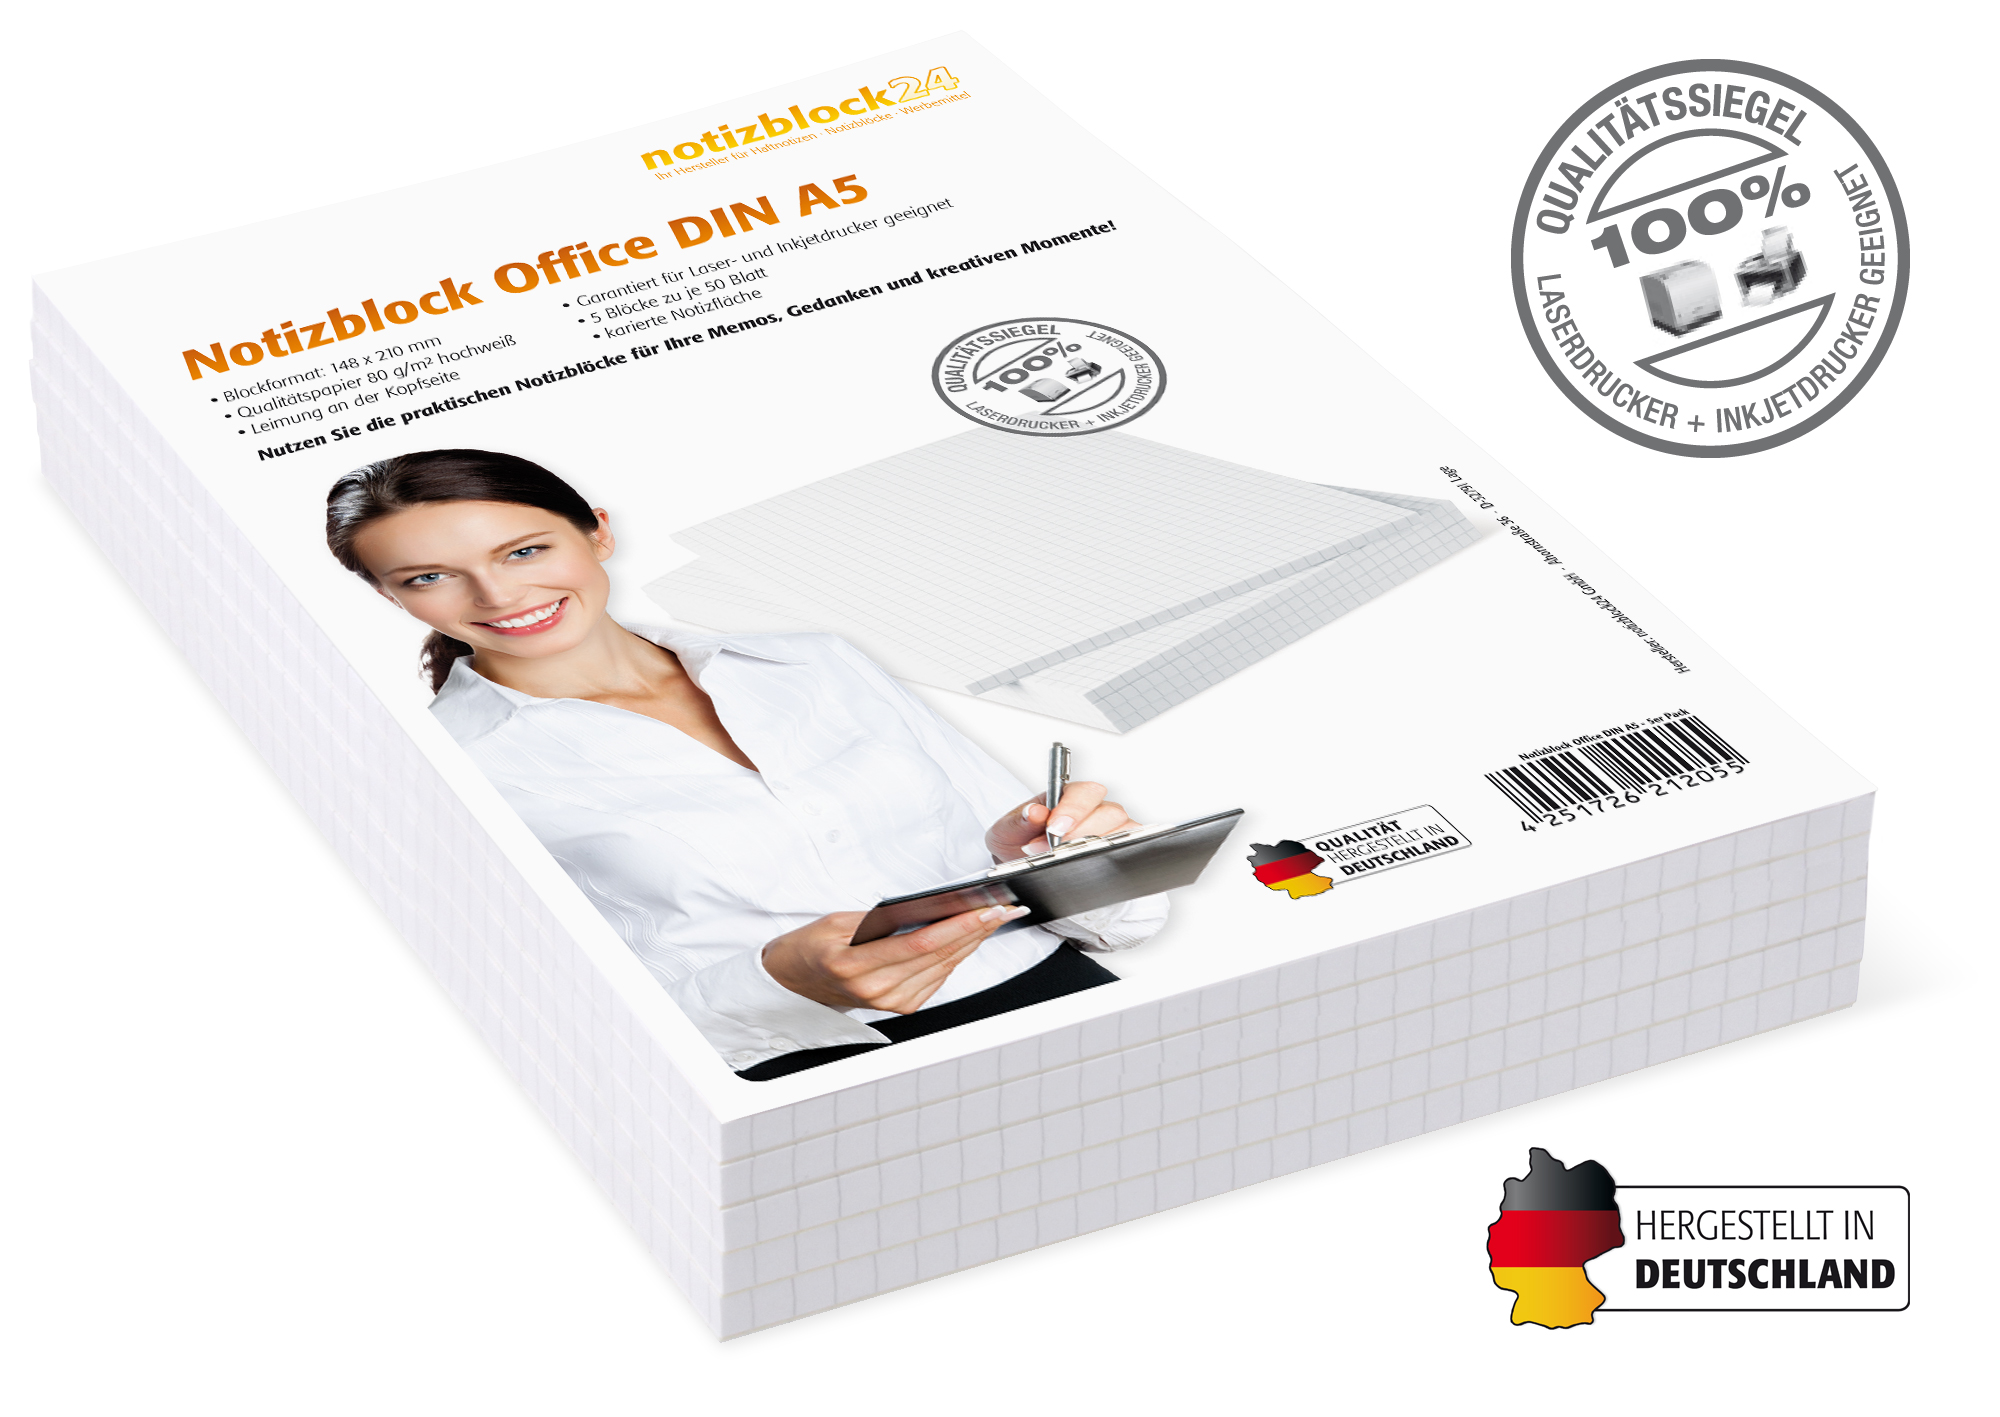 Notizblock Office DIN A5 - 5er Pack